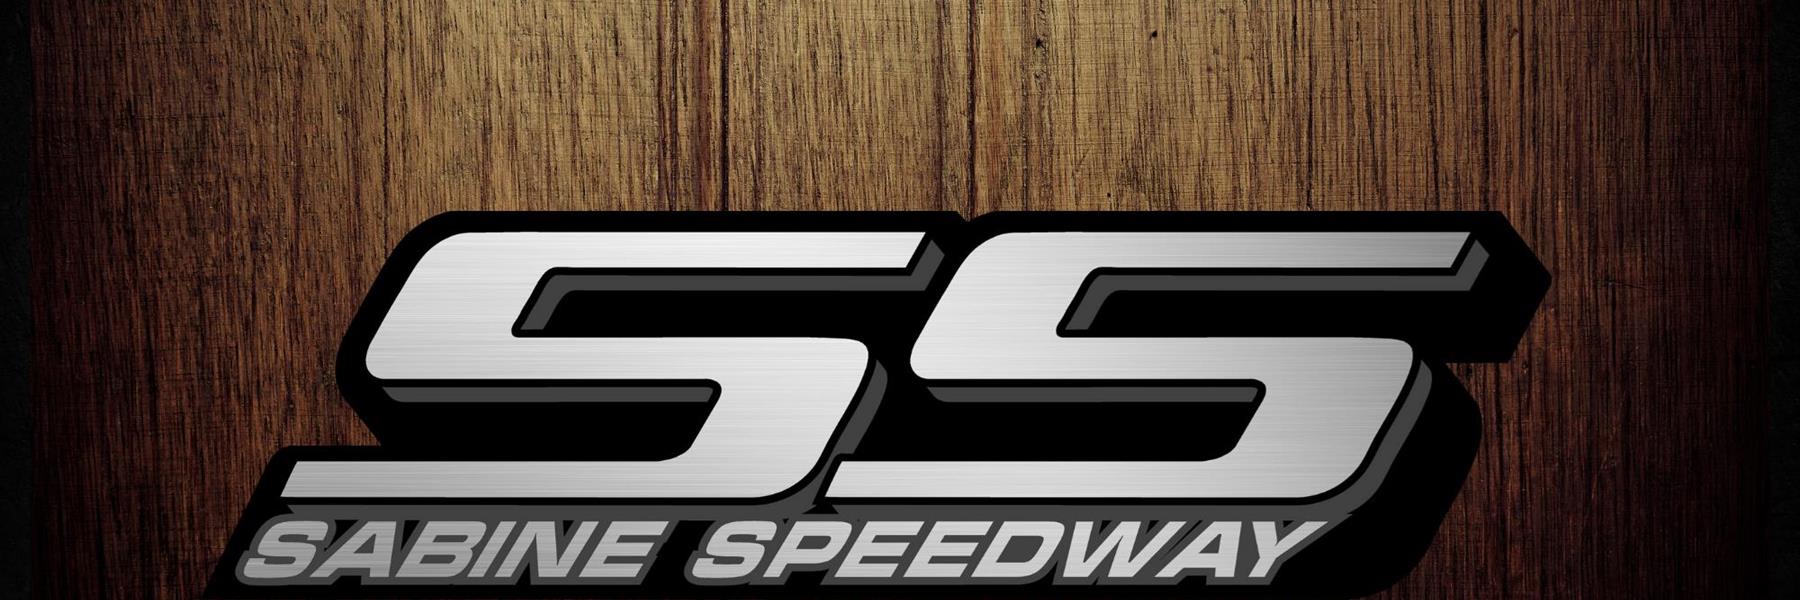 6/24/2022 - Sabine Speedway